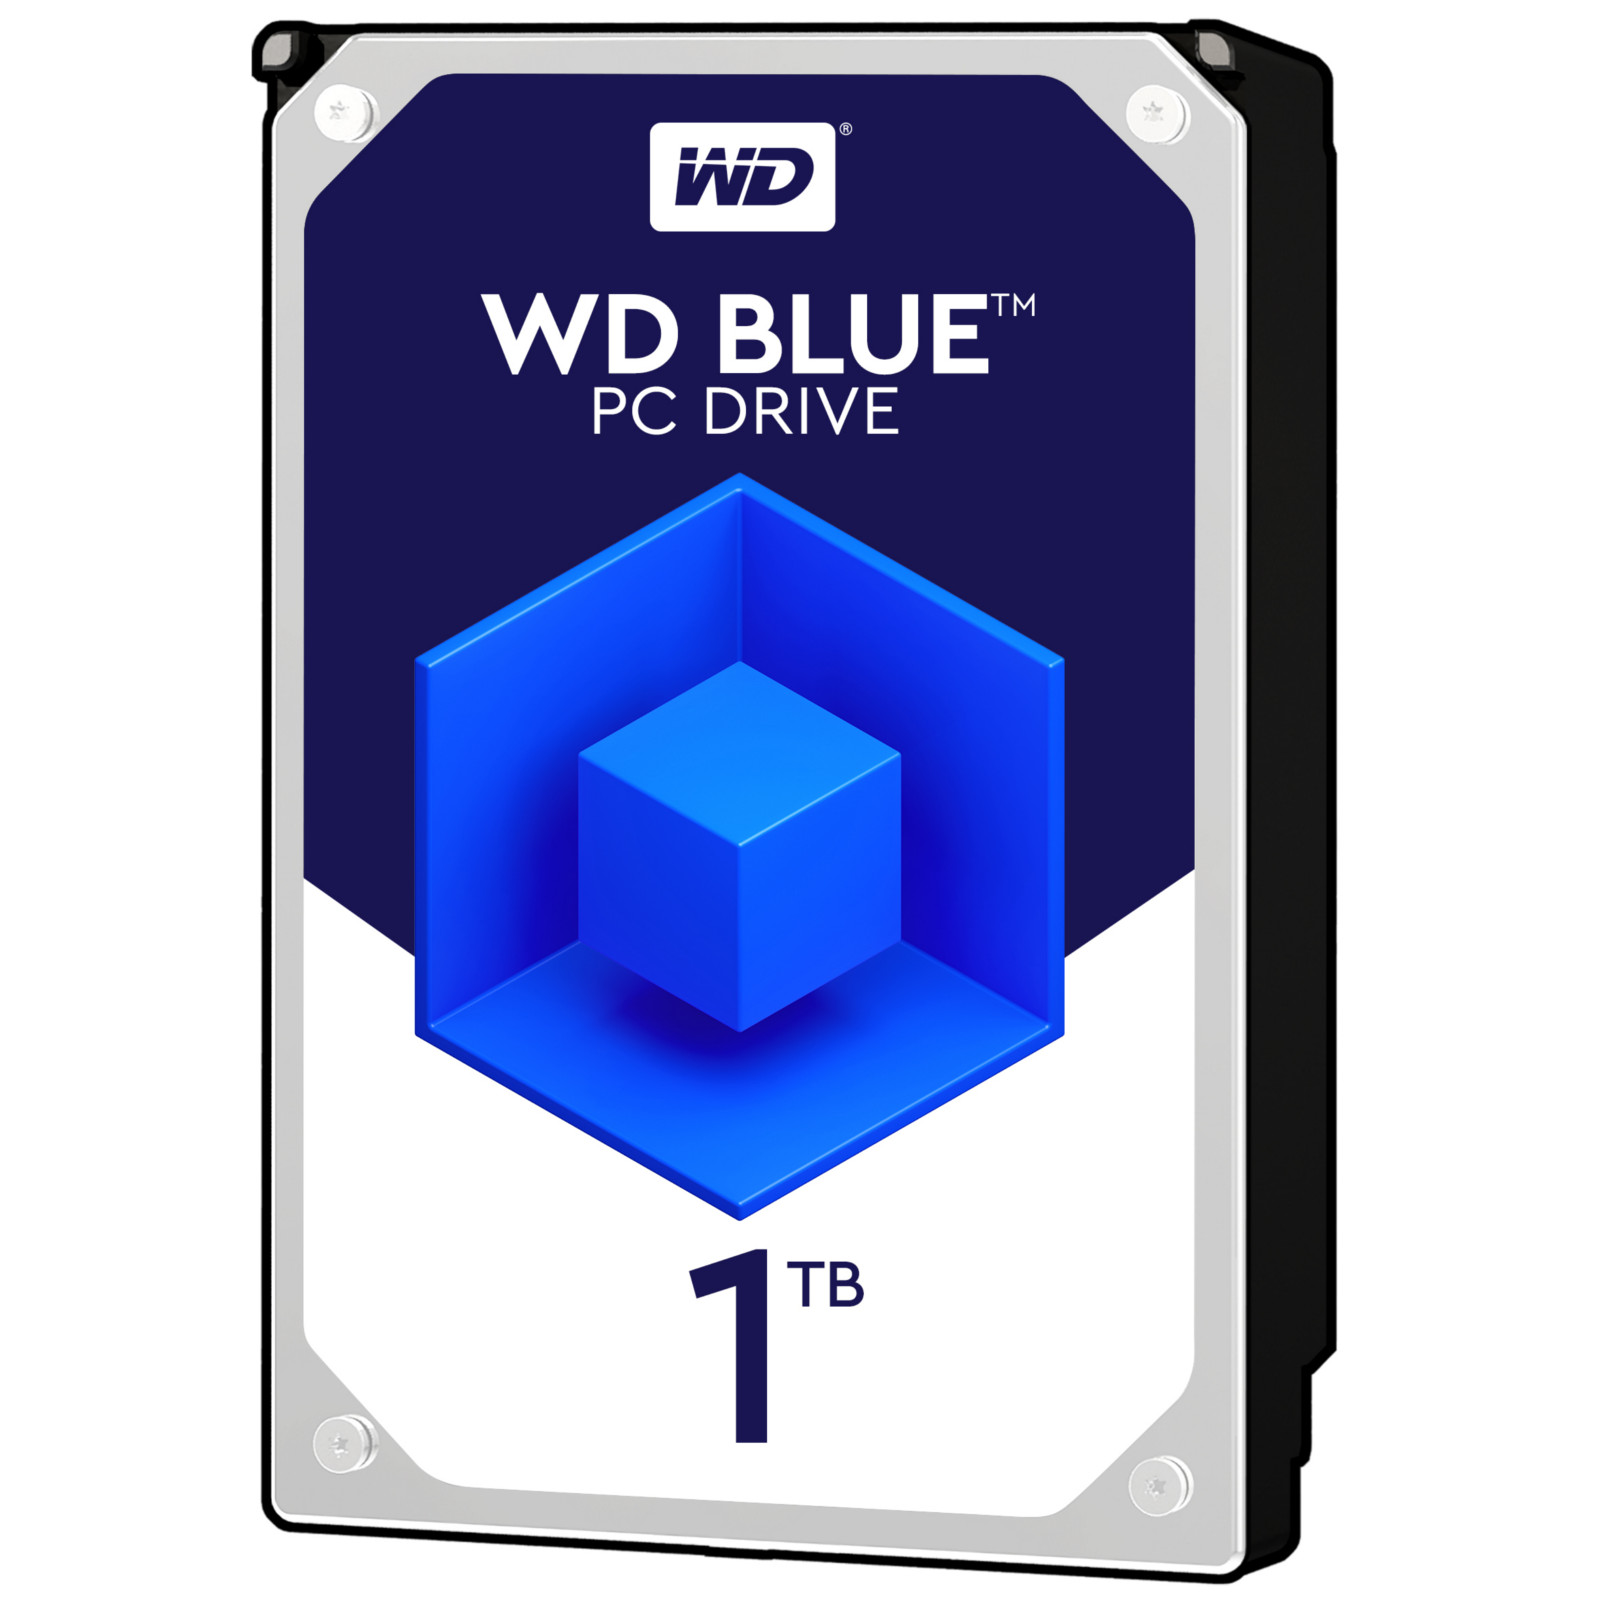 WD - WD 1TB Blue HDD 7200rpm 64MB Cache Internal Hard Drive (WD10EZEX)